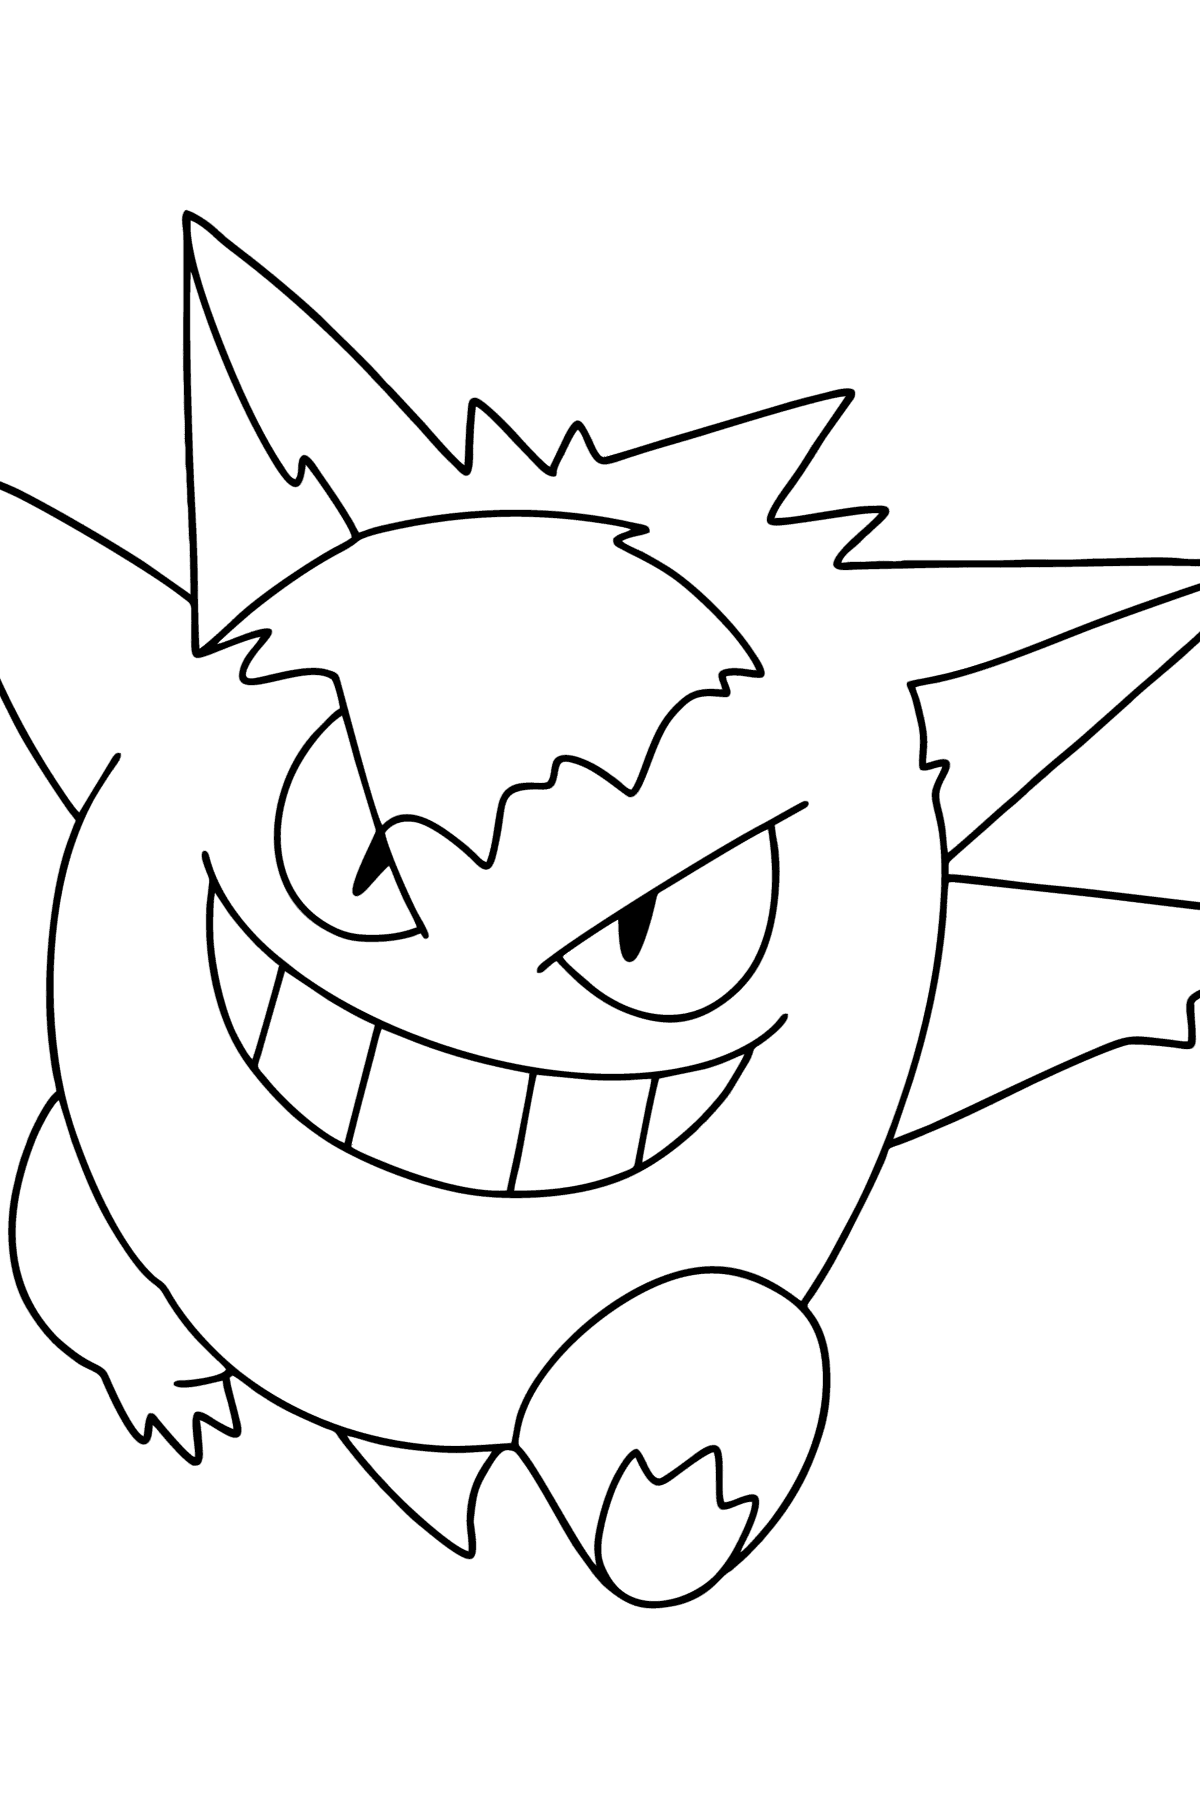 Раскраска Покемон (Pokemon Go) Gengar - Картинки для Детей